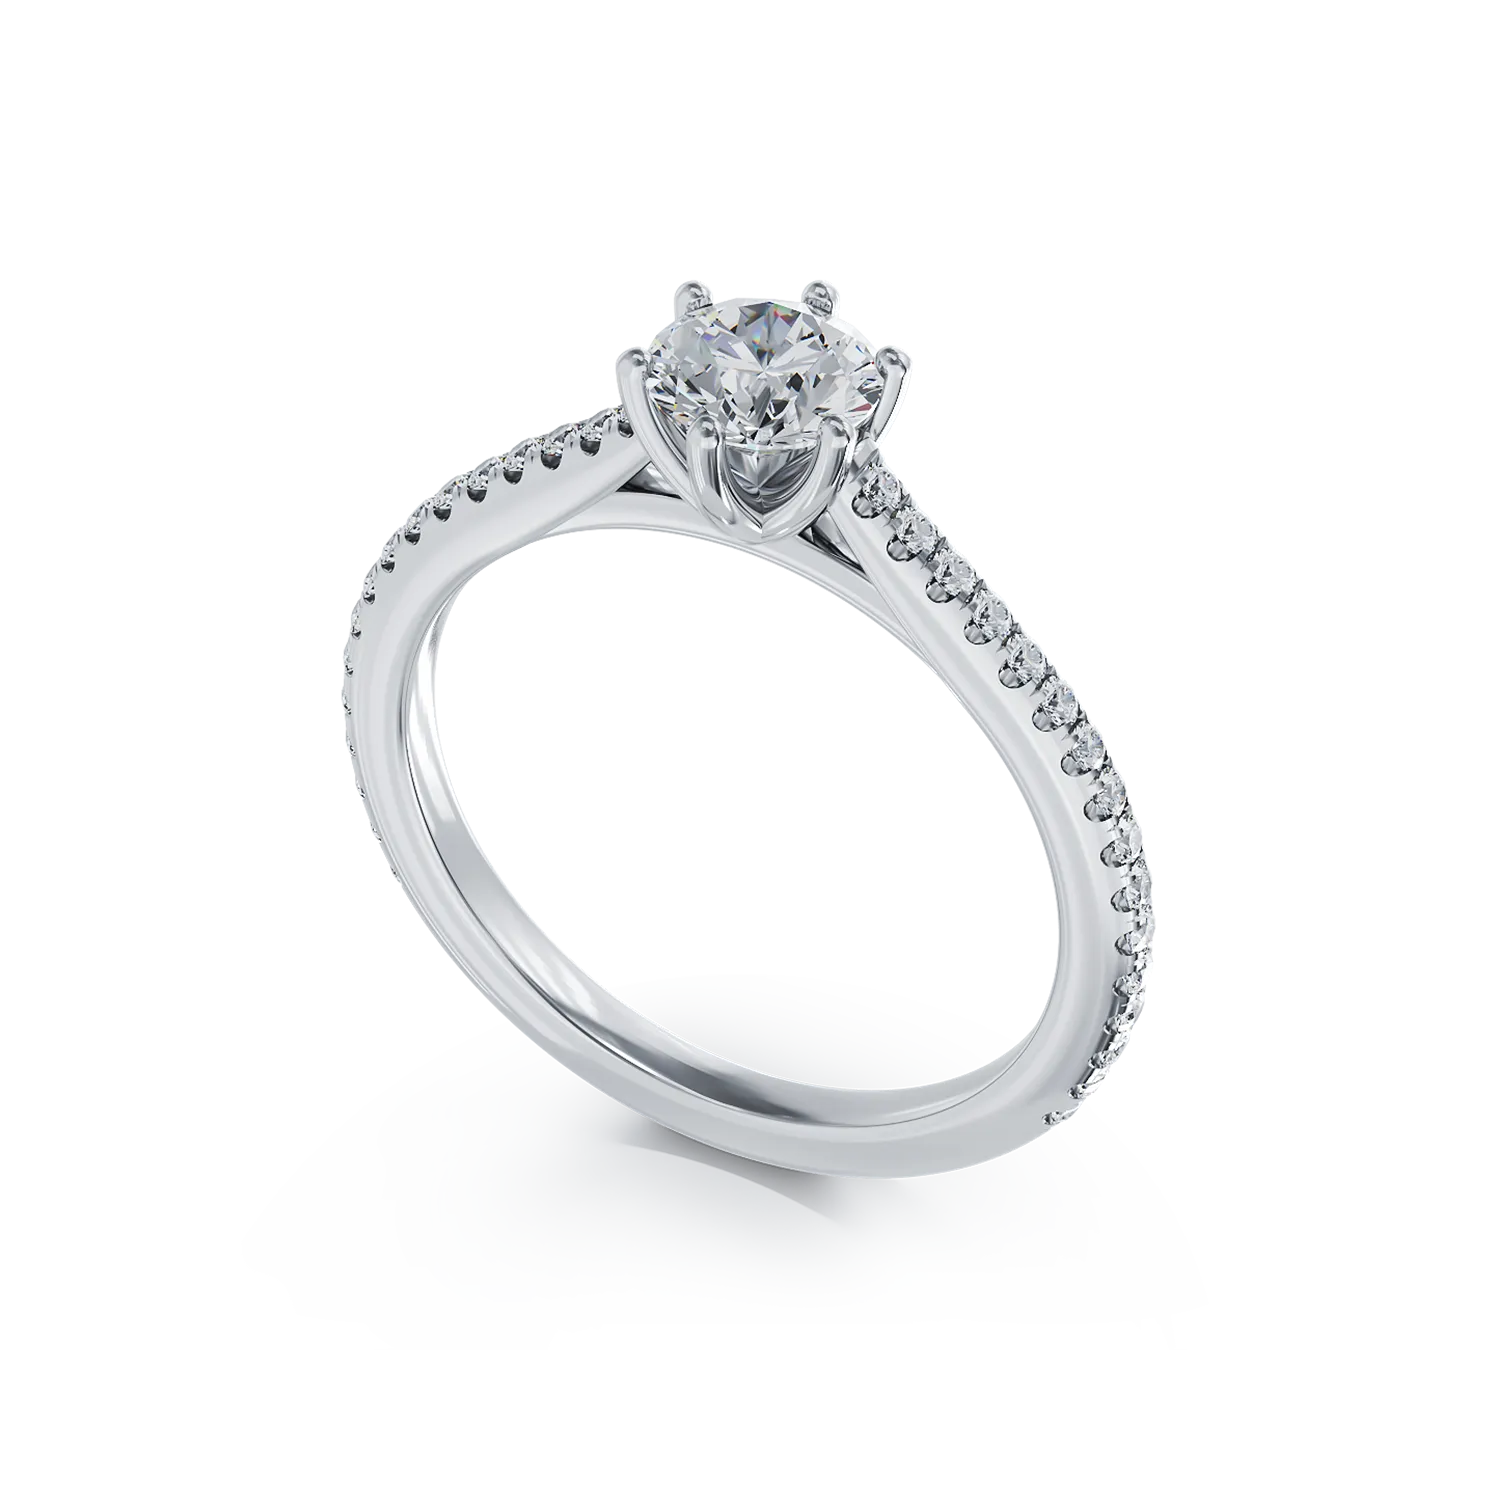 Platina eljegyzési gyűrű 0.5kt gyémánttal és 0.19kt gyémánttal